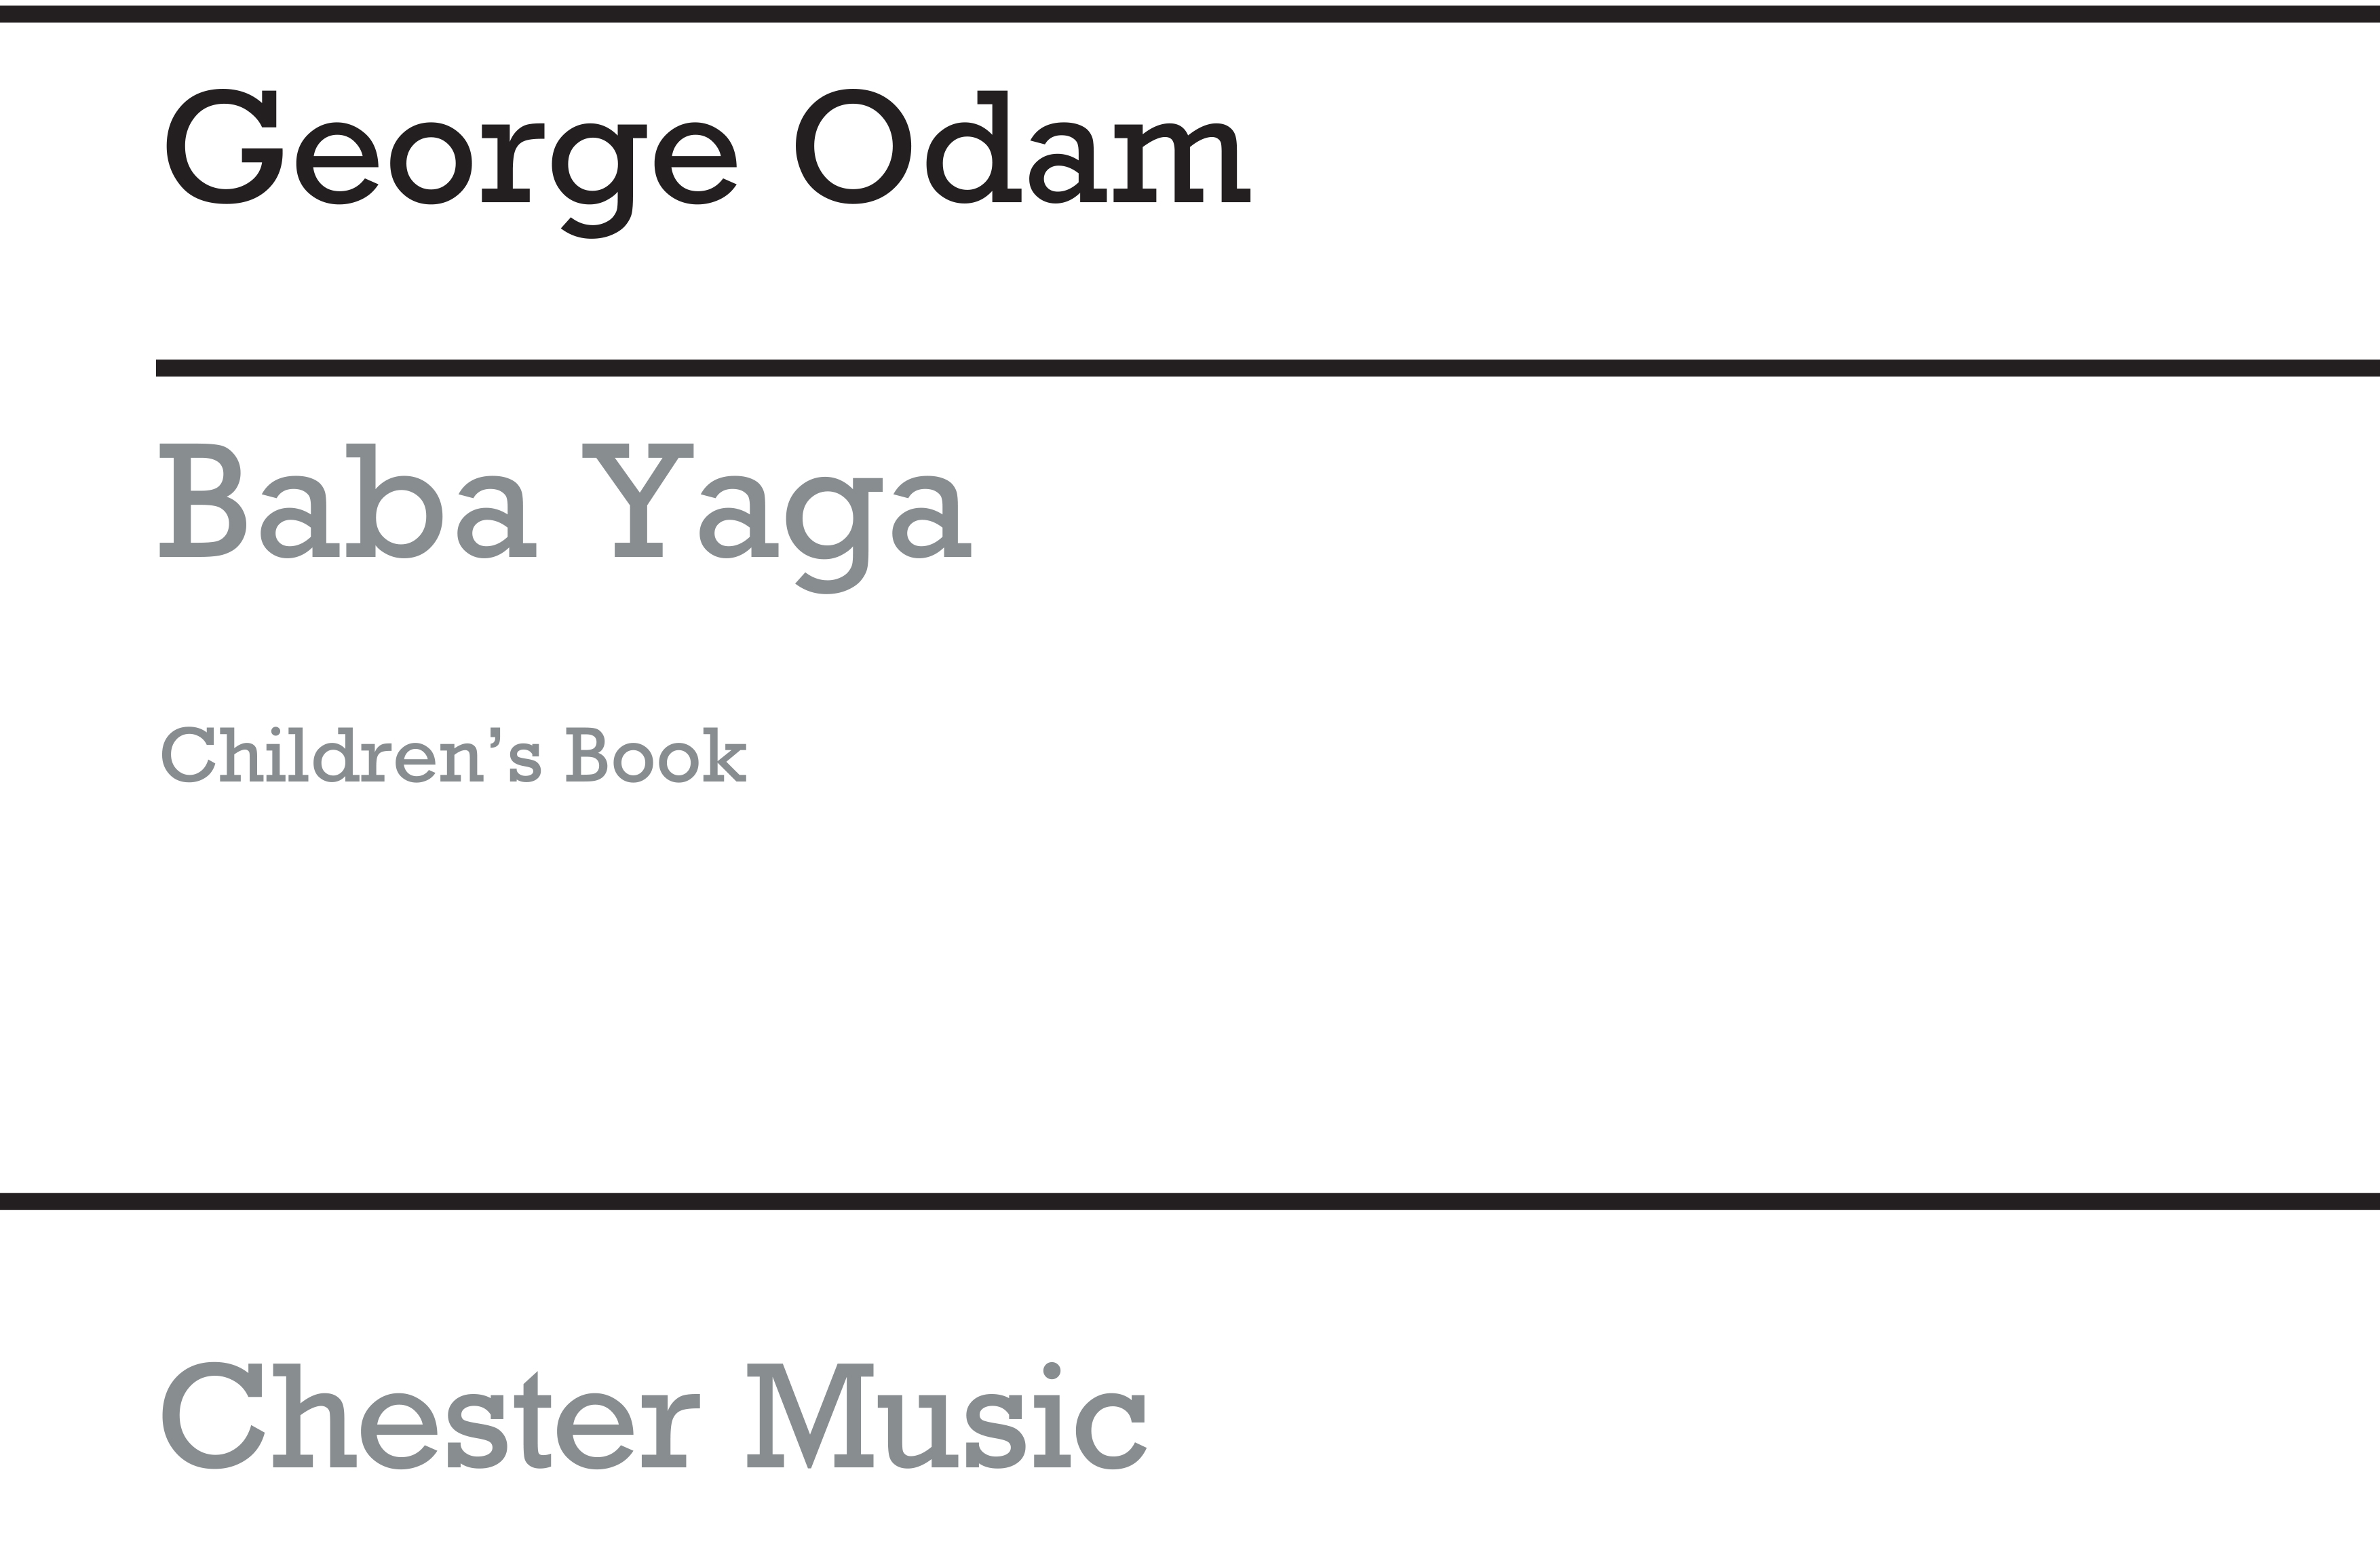 George Odam: Baba Yaga Children's Book: Classroom Musical